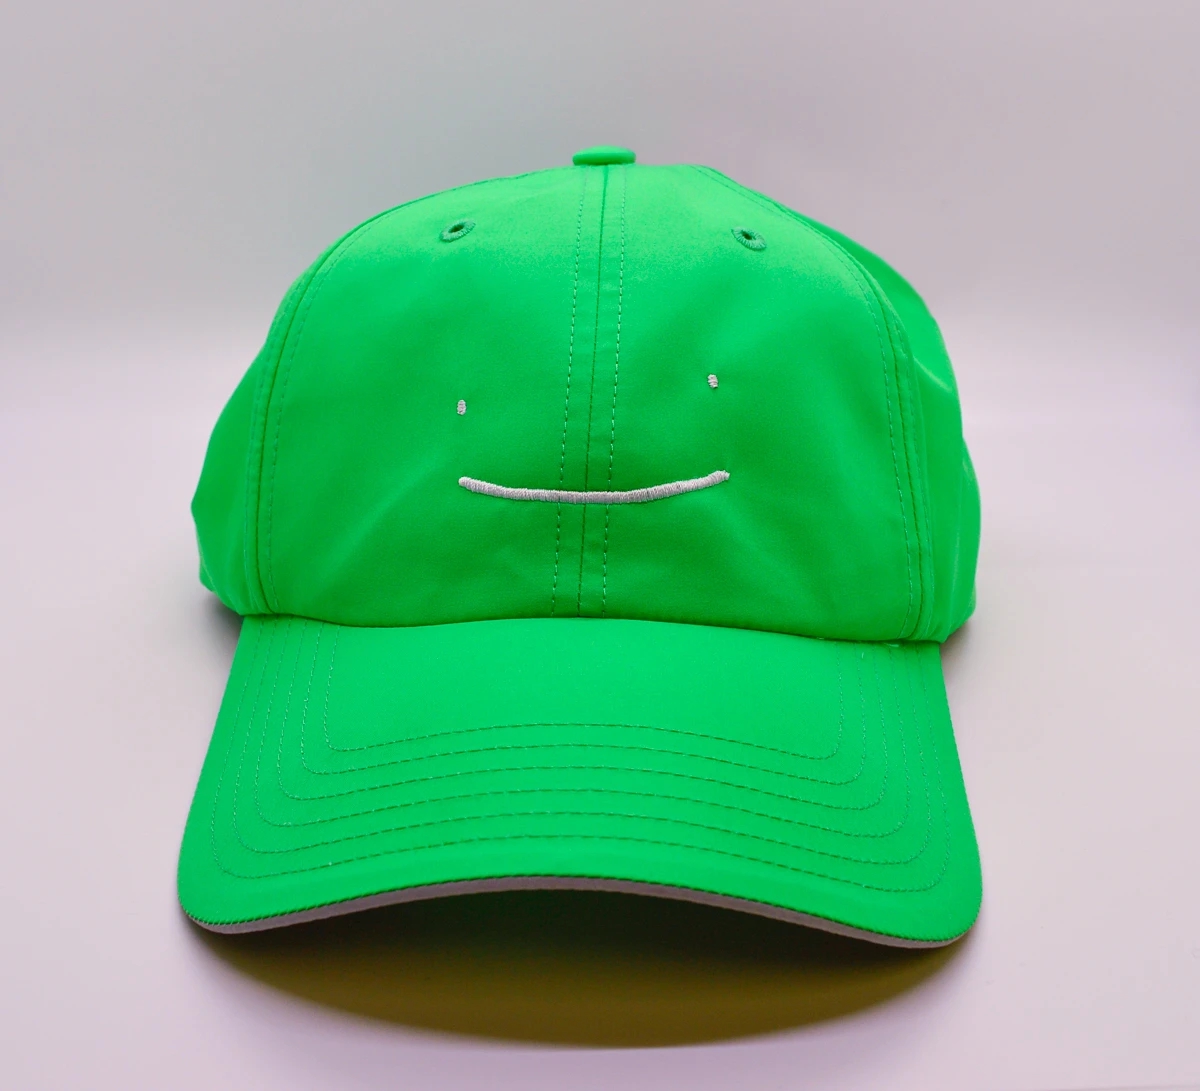 Sapnap Embroidered Hat, Dream Team Wiki